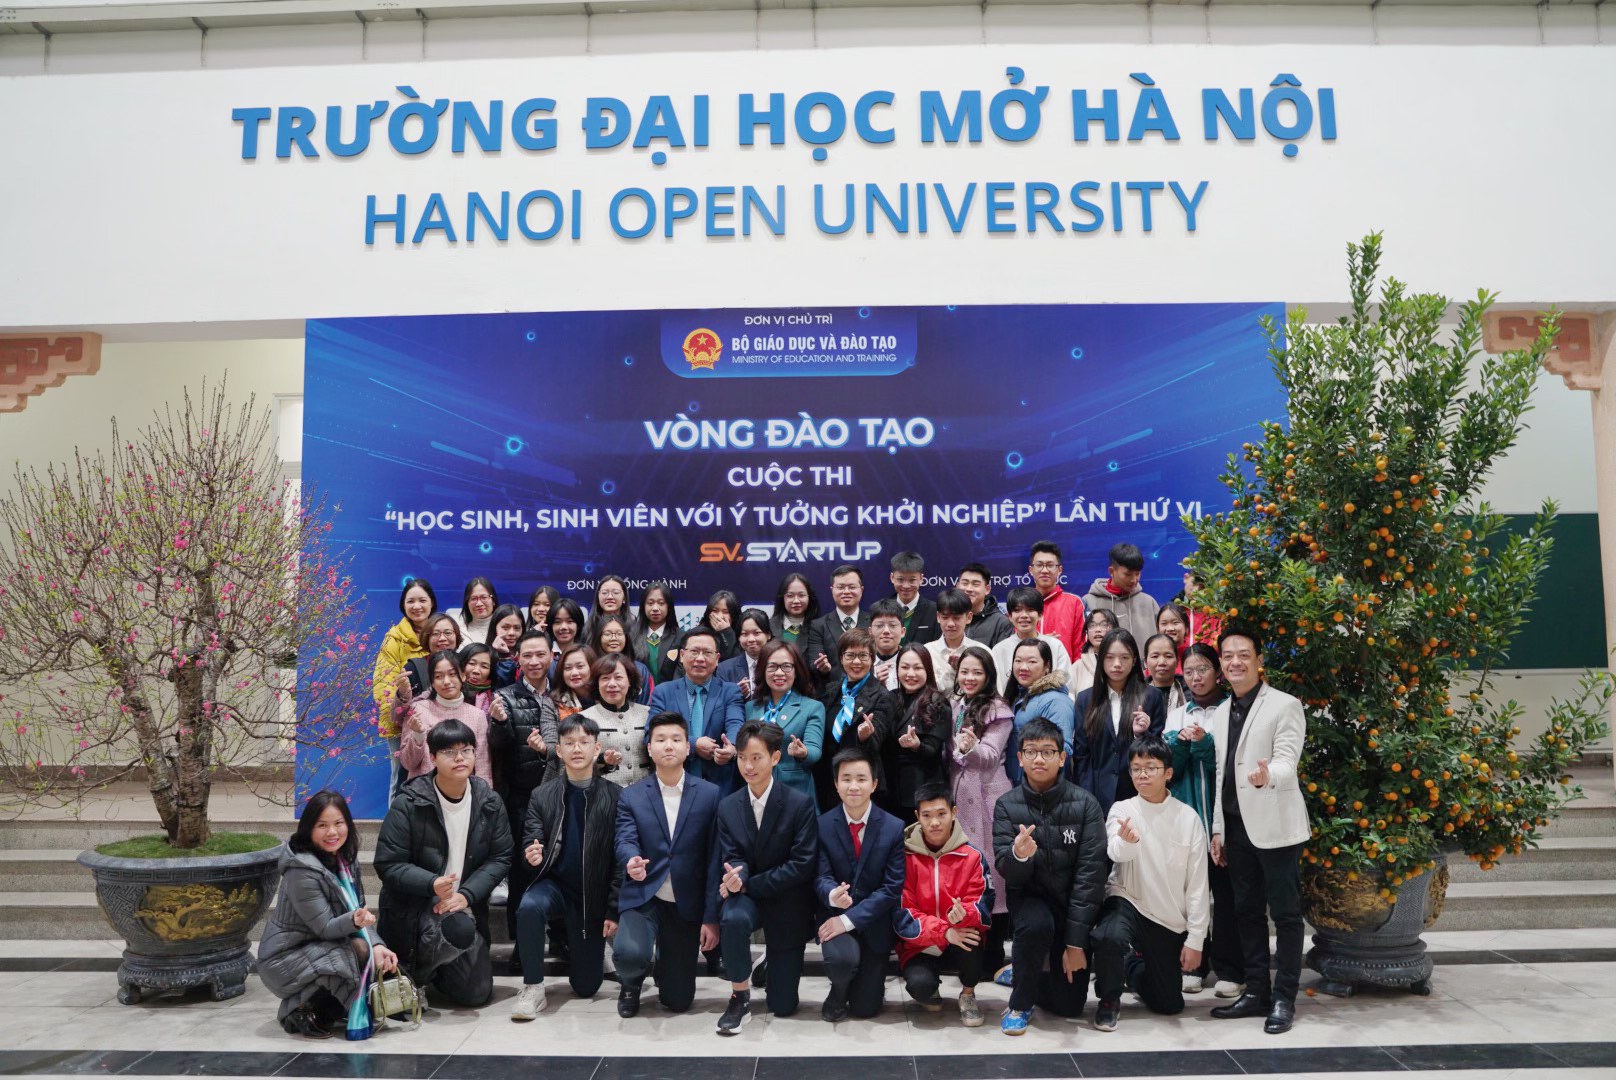 Các khách mời, đại diện phía nhà trường, thầy cô và học sinh tham dự vòng Đào tạo trực tiếp Đại học Mở Hà Nội chụp ảnh lưu niệm​​​​​